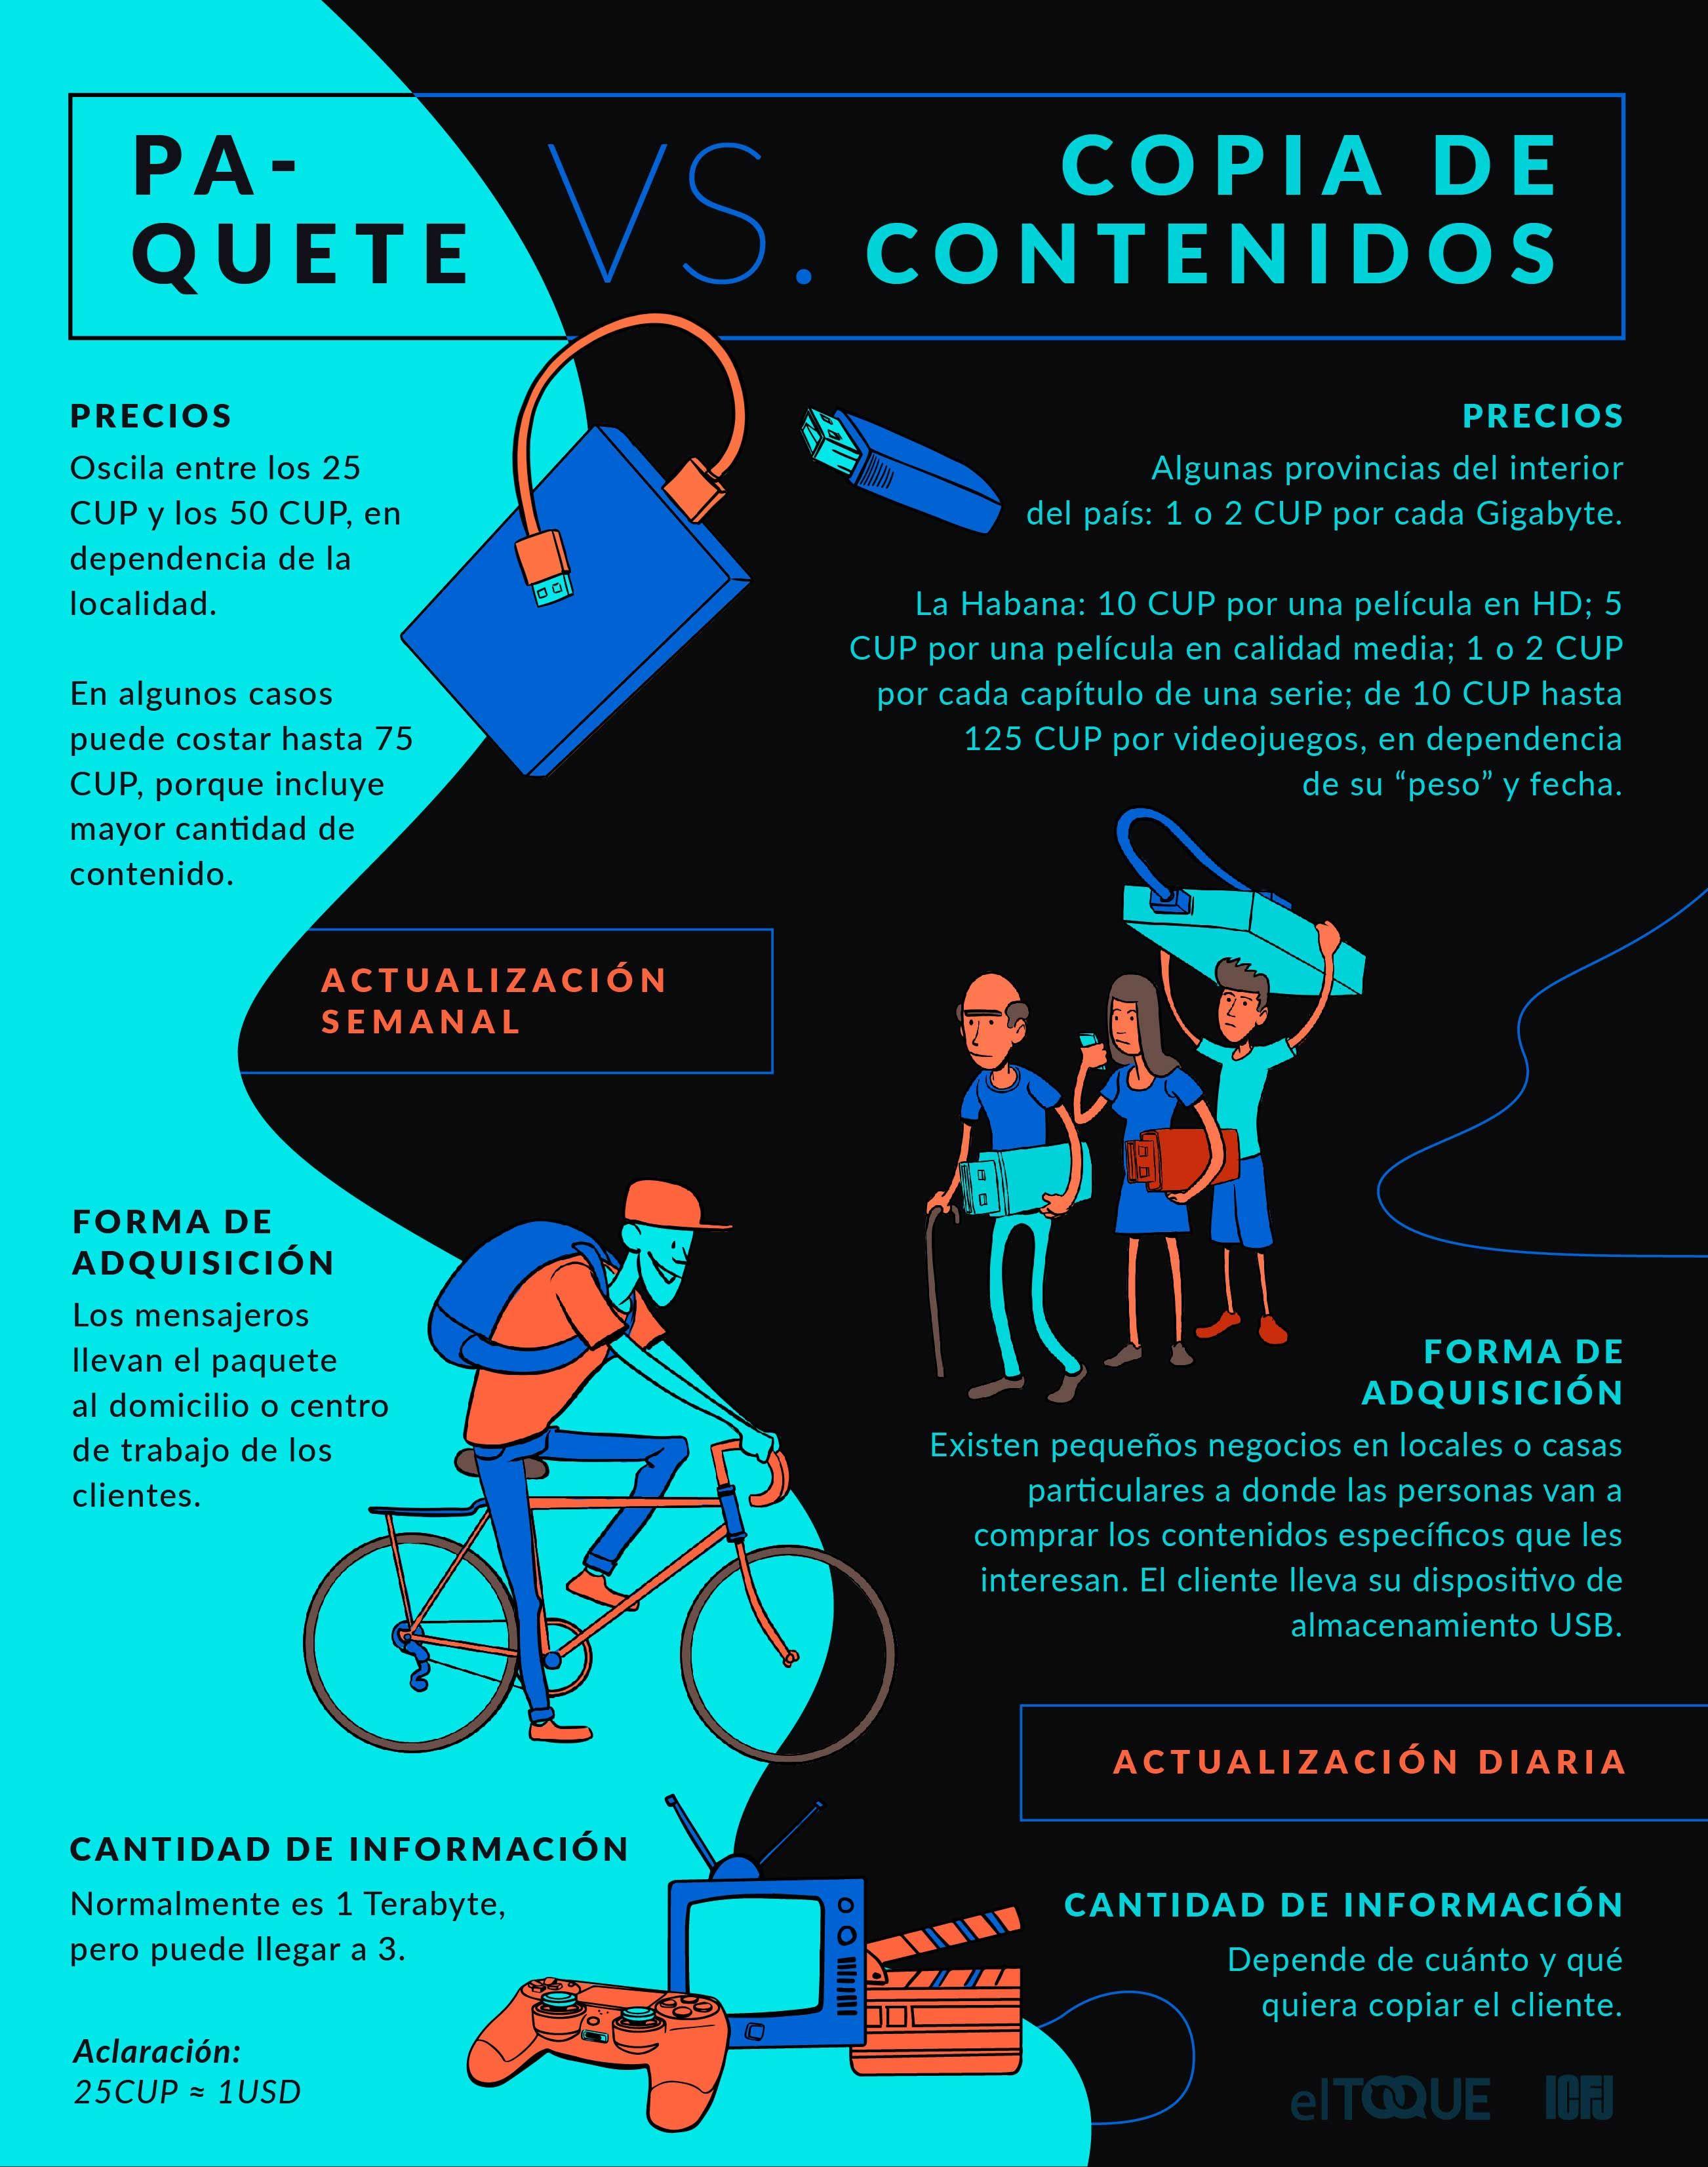 Diferencias entre el paquete semanal y los negocios que venden contenidos digitales específicos en Cuba